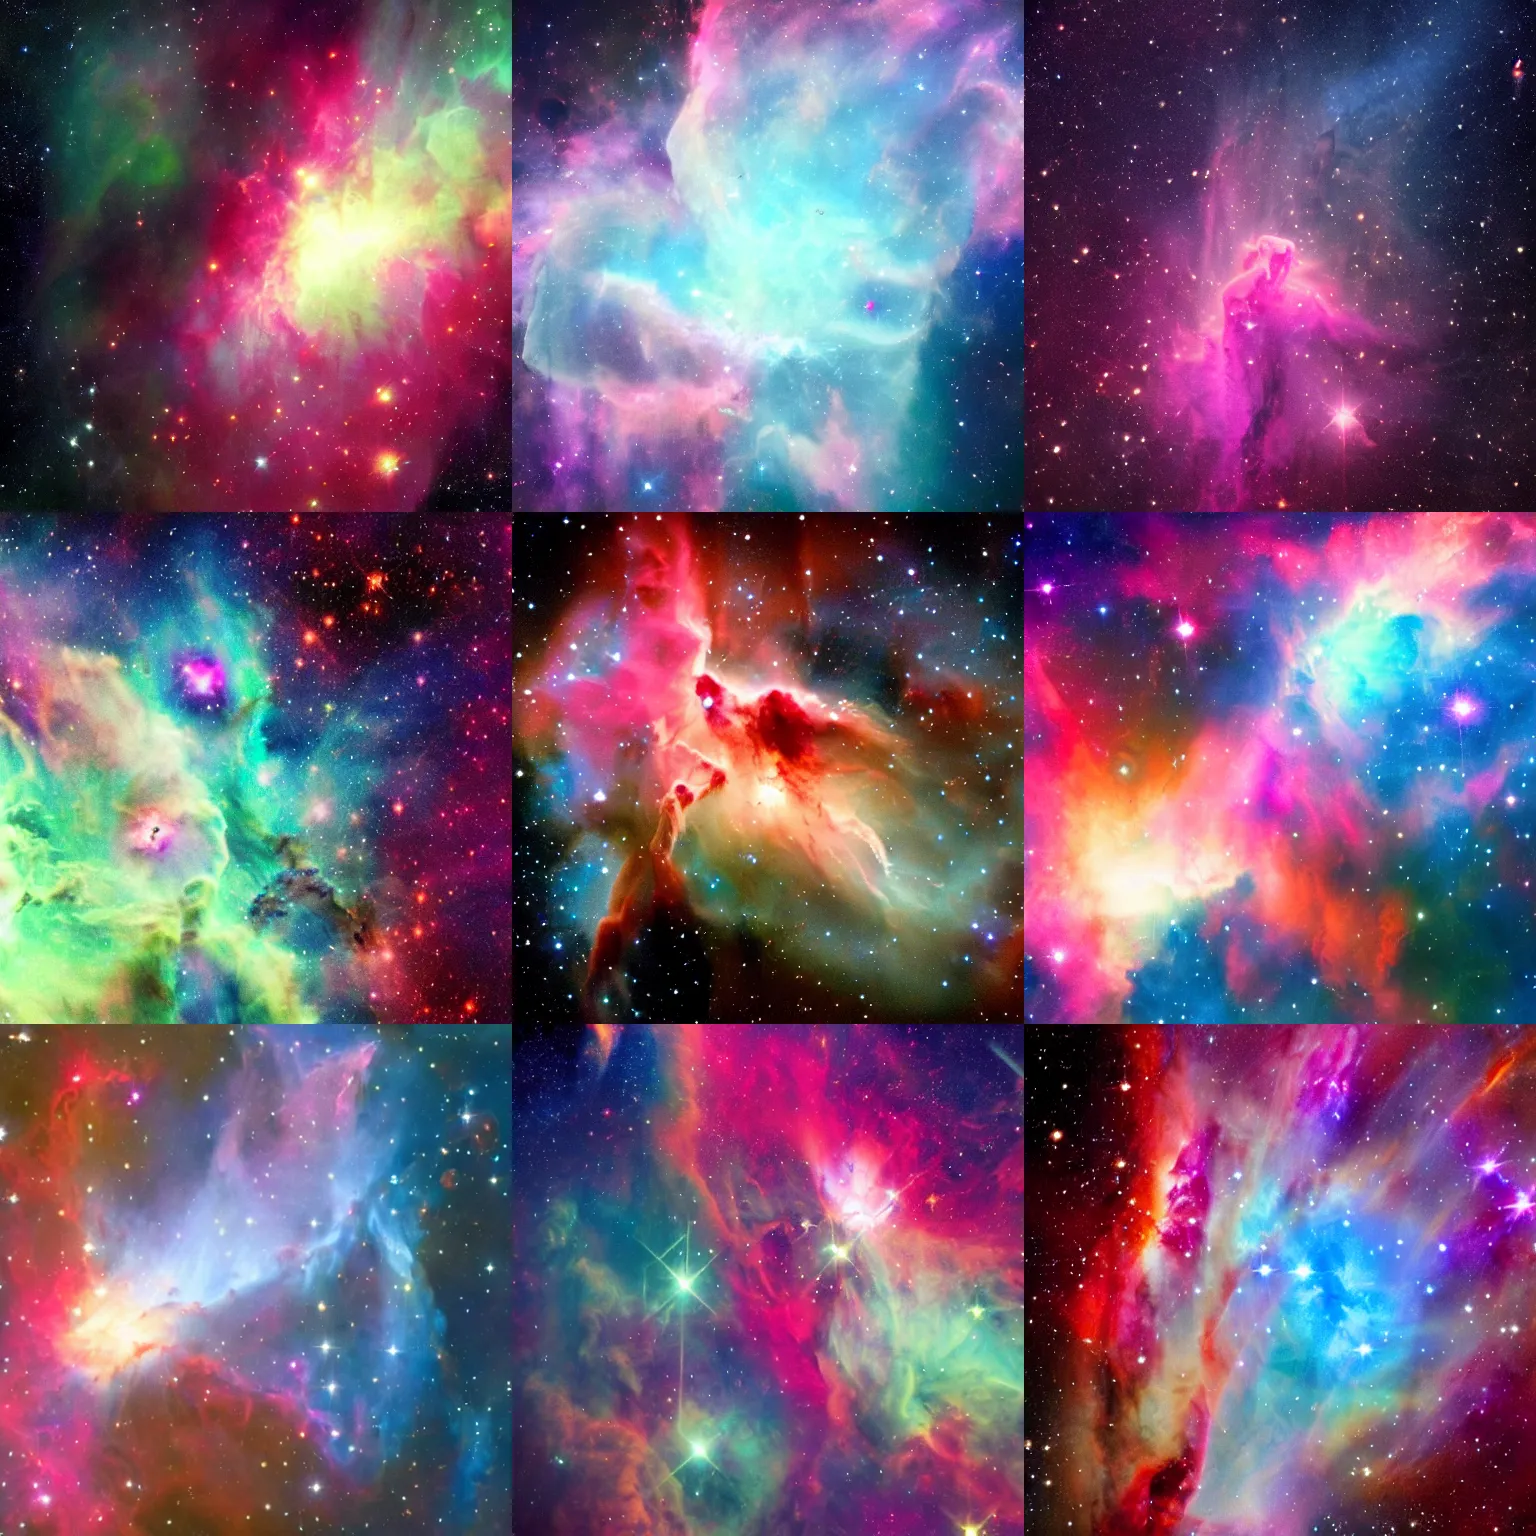 Prompt: a beautiful nebula